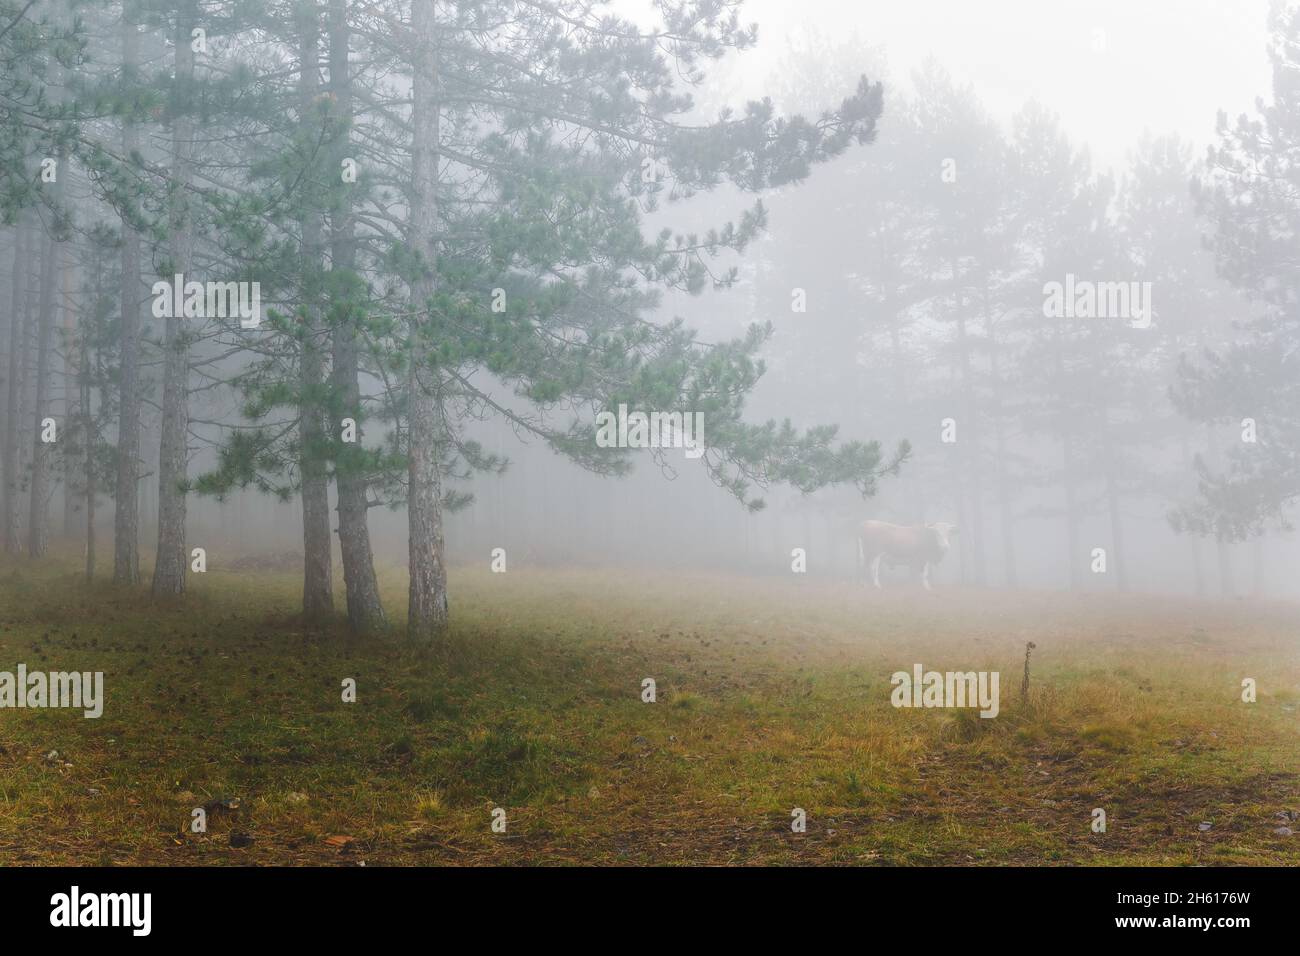 Neblige Berglandschaft am Morgen mit einem Stier, der mitten in einem nebligen Pinienwald steht. Selektiver Fokus Stockfoto